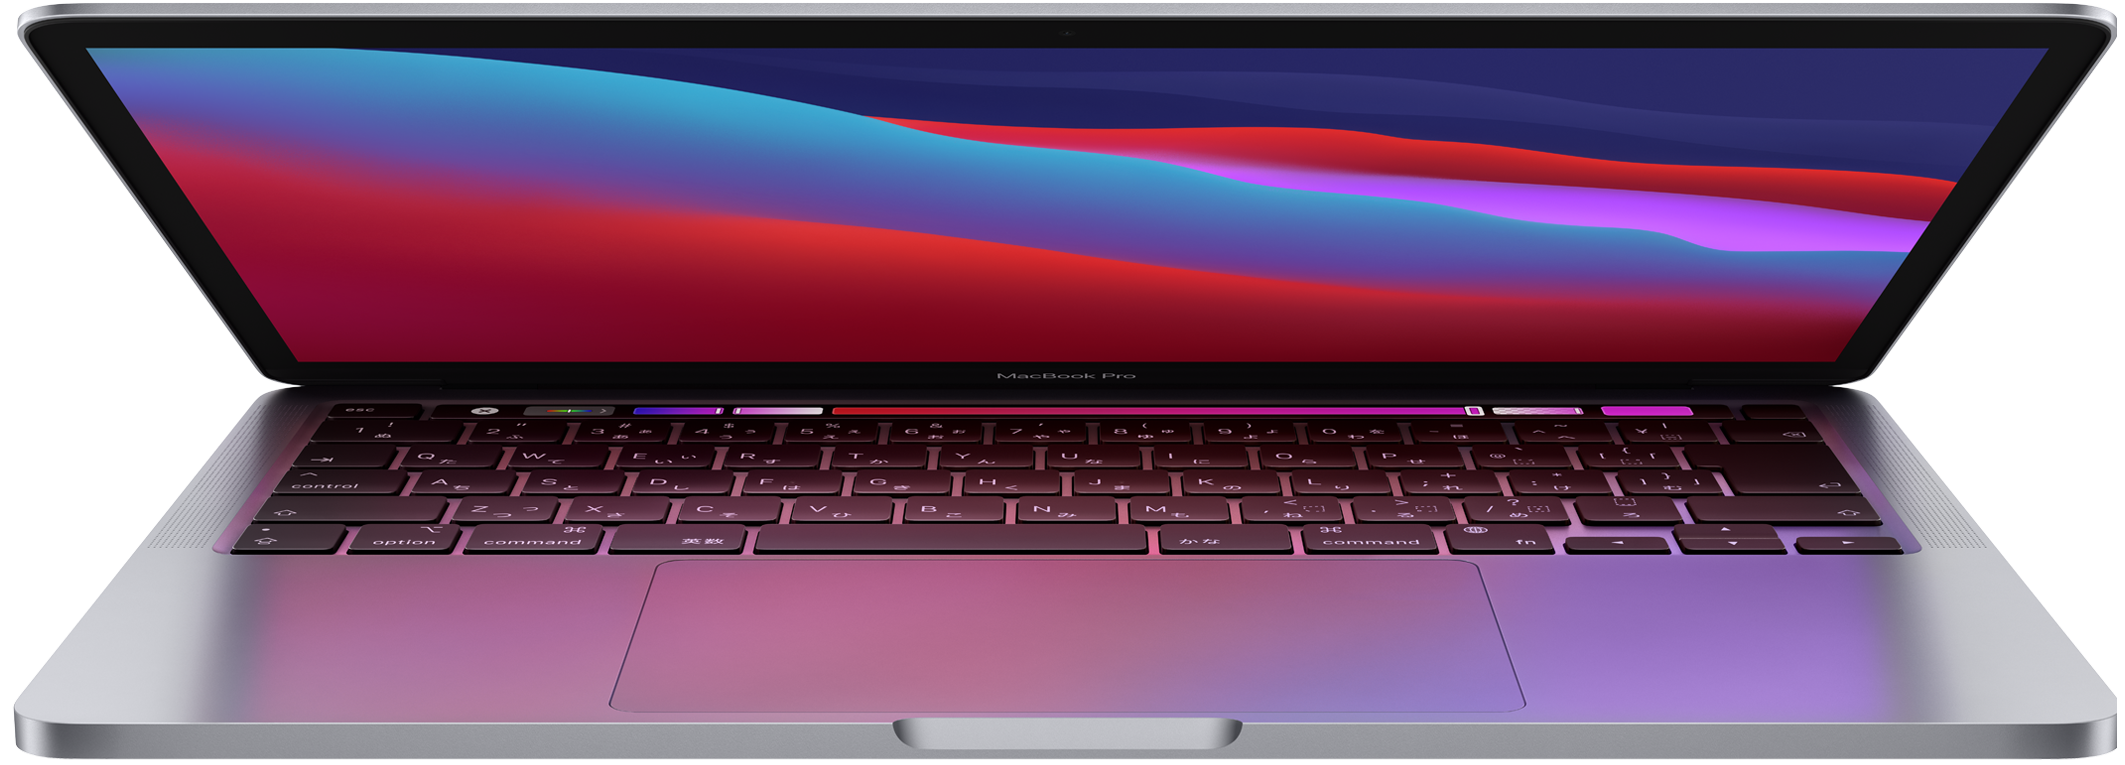 Macbook Pro Pro のすべてが目を覚ます。Apple M1 チップを搭載した MacBook Pro、登場。